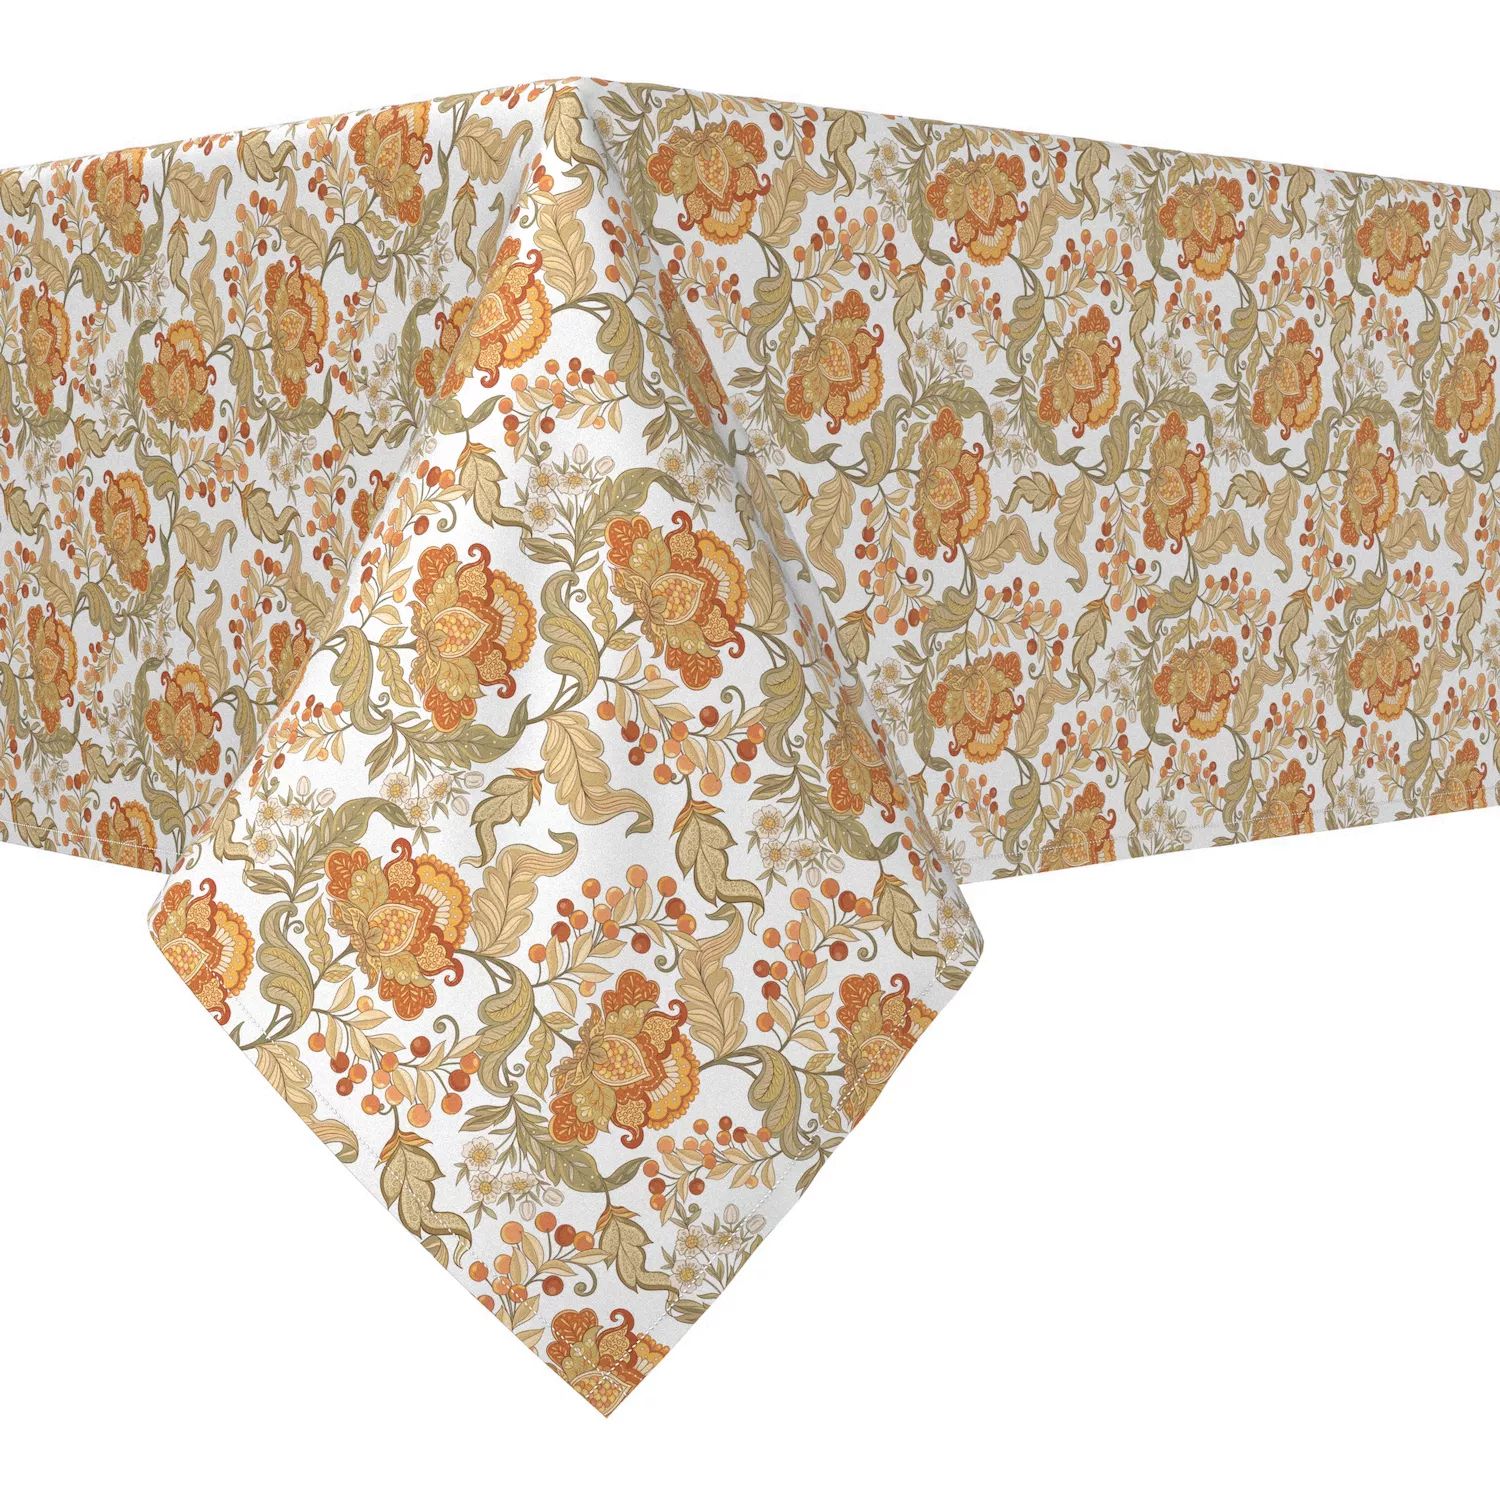 Прямоугольная скатерть, 100 % полиэстер, 60x120 дюймов, с цветочным принтом в винтажном стиле. прямоугольная скатерть 100 % полиэстер 60x120 дюймов с цветочным принтом в винтажном стиле